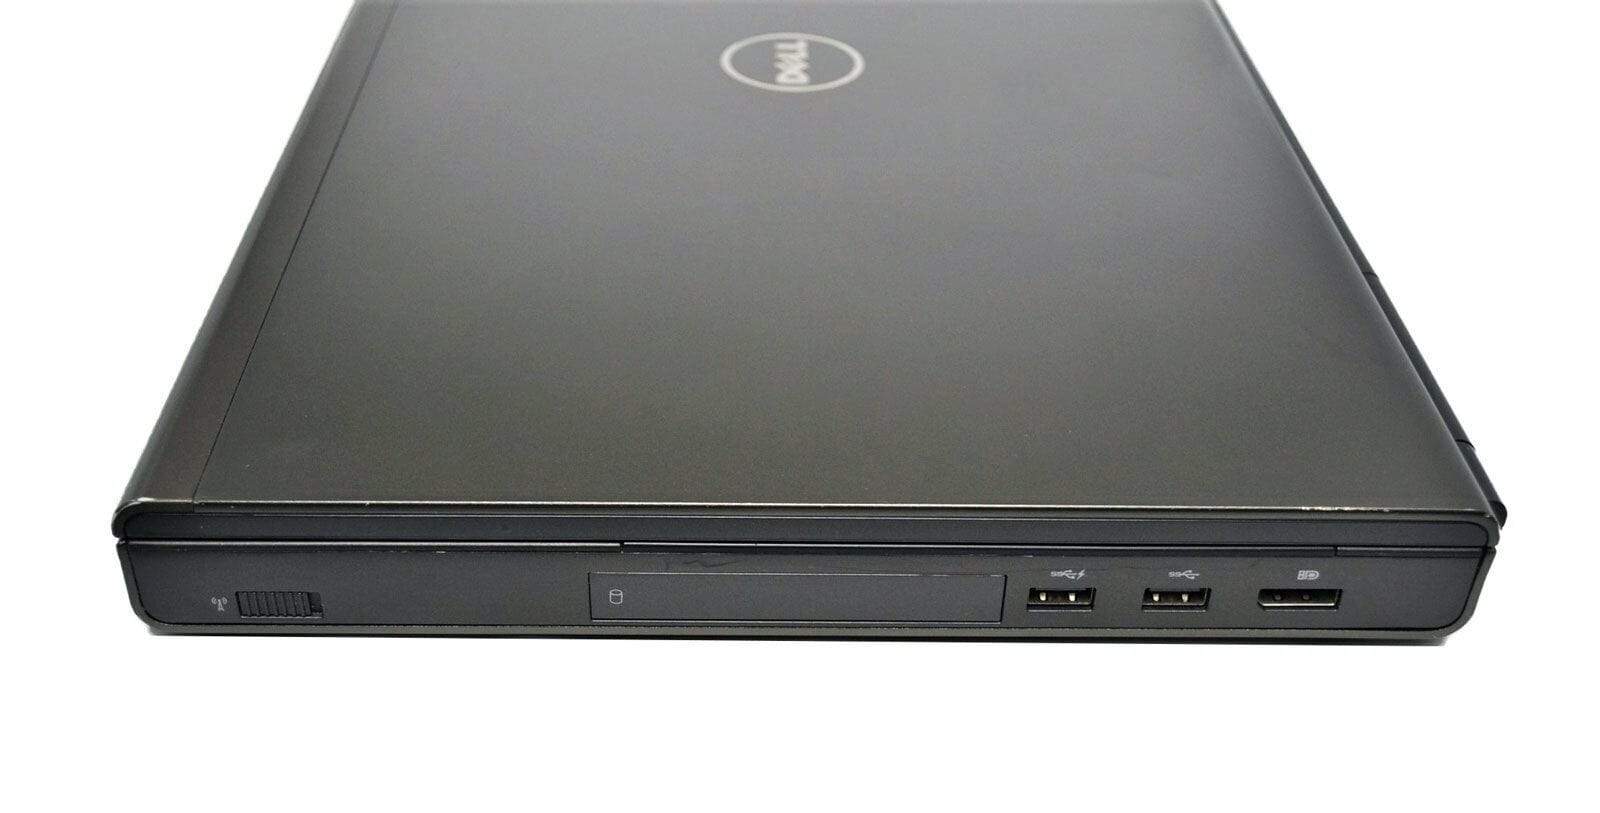 Dell Precision 17" M6800 CAD Laptop: Core i7, Quadro, 480GB SSD, VAT, Warranty - CruiseTech